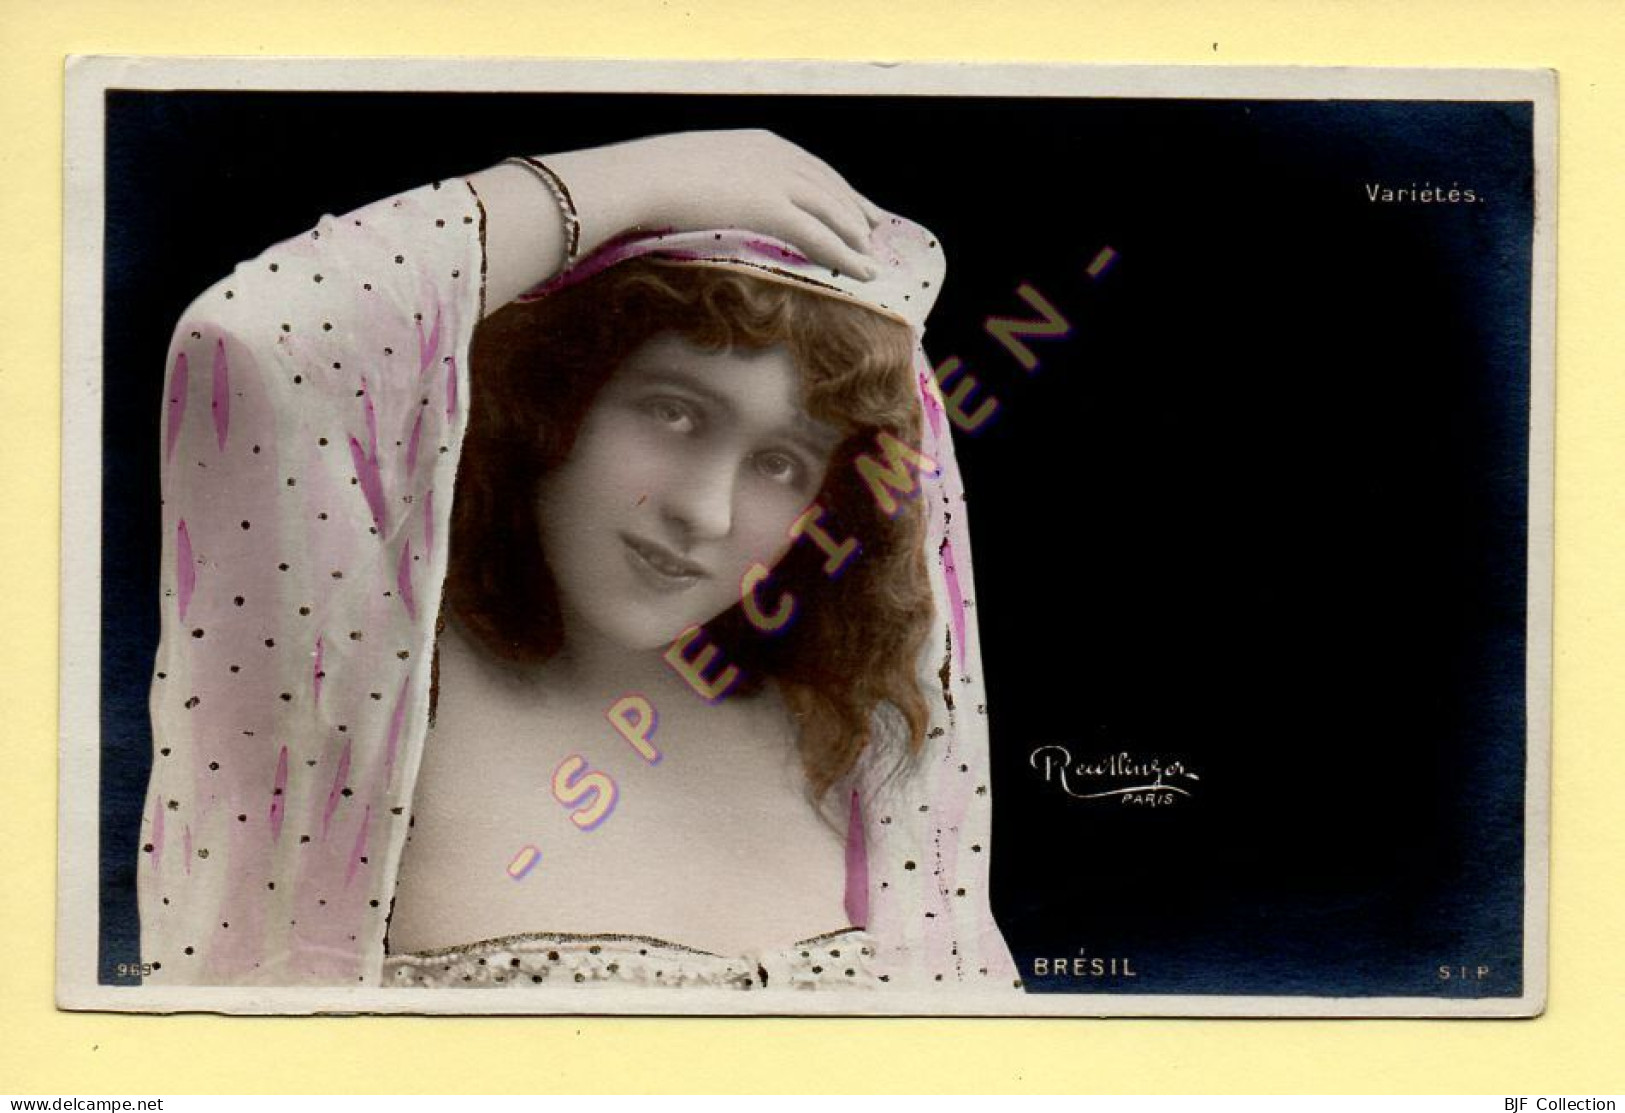 BRESIL – Artiste 1900 – Femme (Variétés) – Photo Reutlinger Paris (voir Cachet Hopital De Campagne N°1) - Artistes